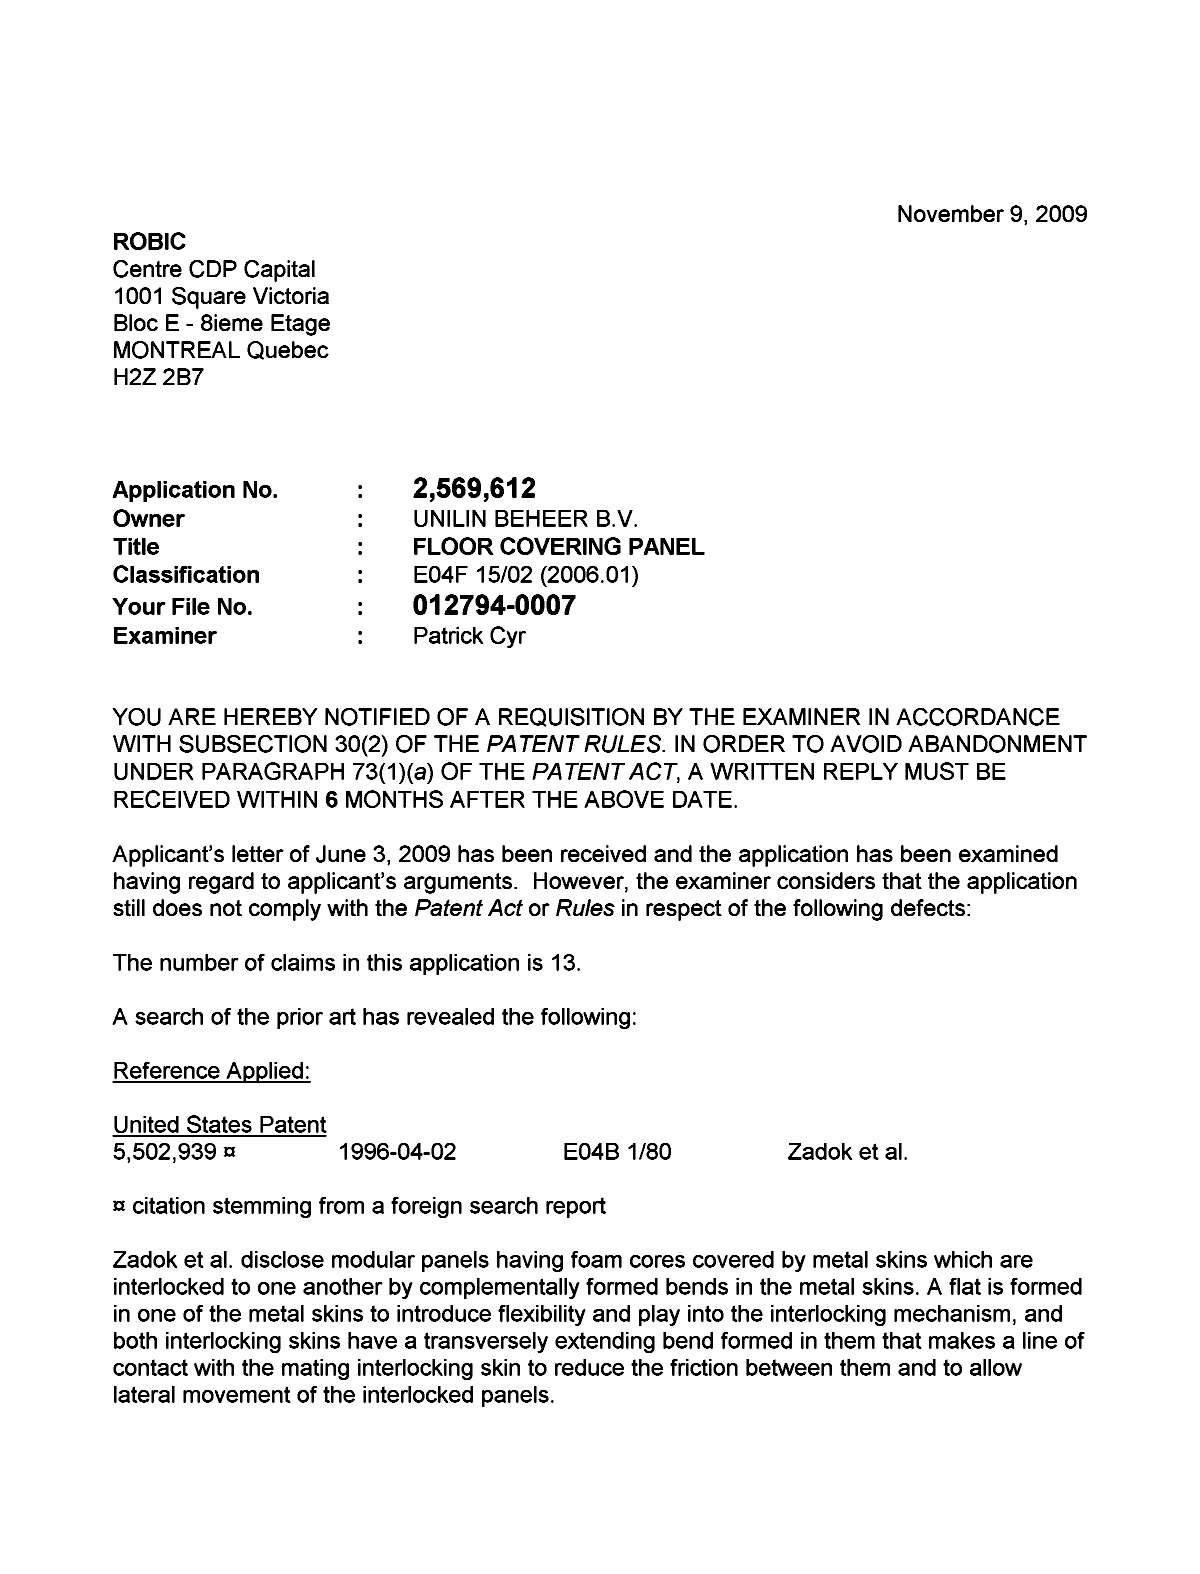 Document de brevet canadien 2569612. Poursuite-Amendment 20091109. Image 1 de 2